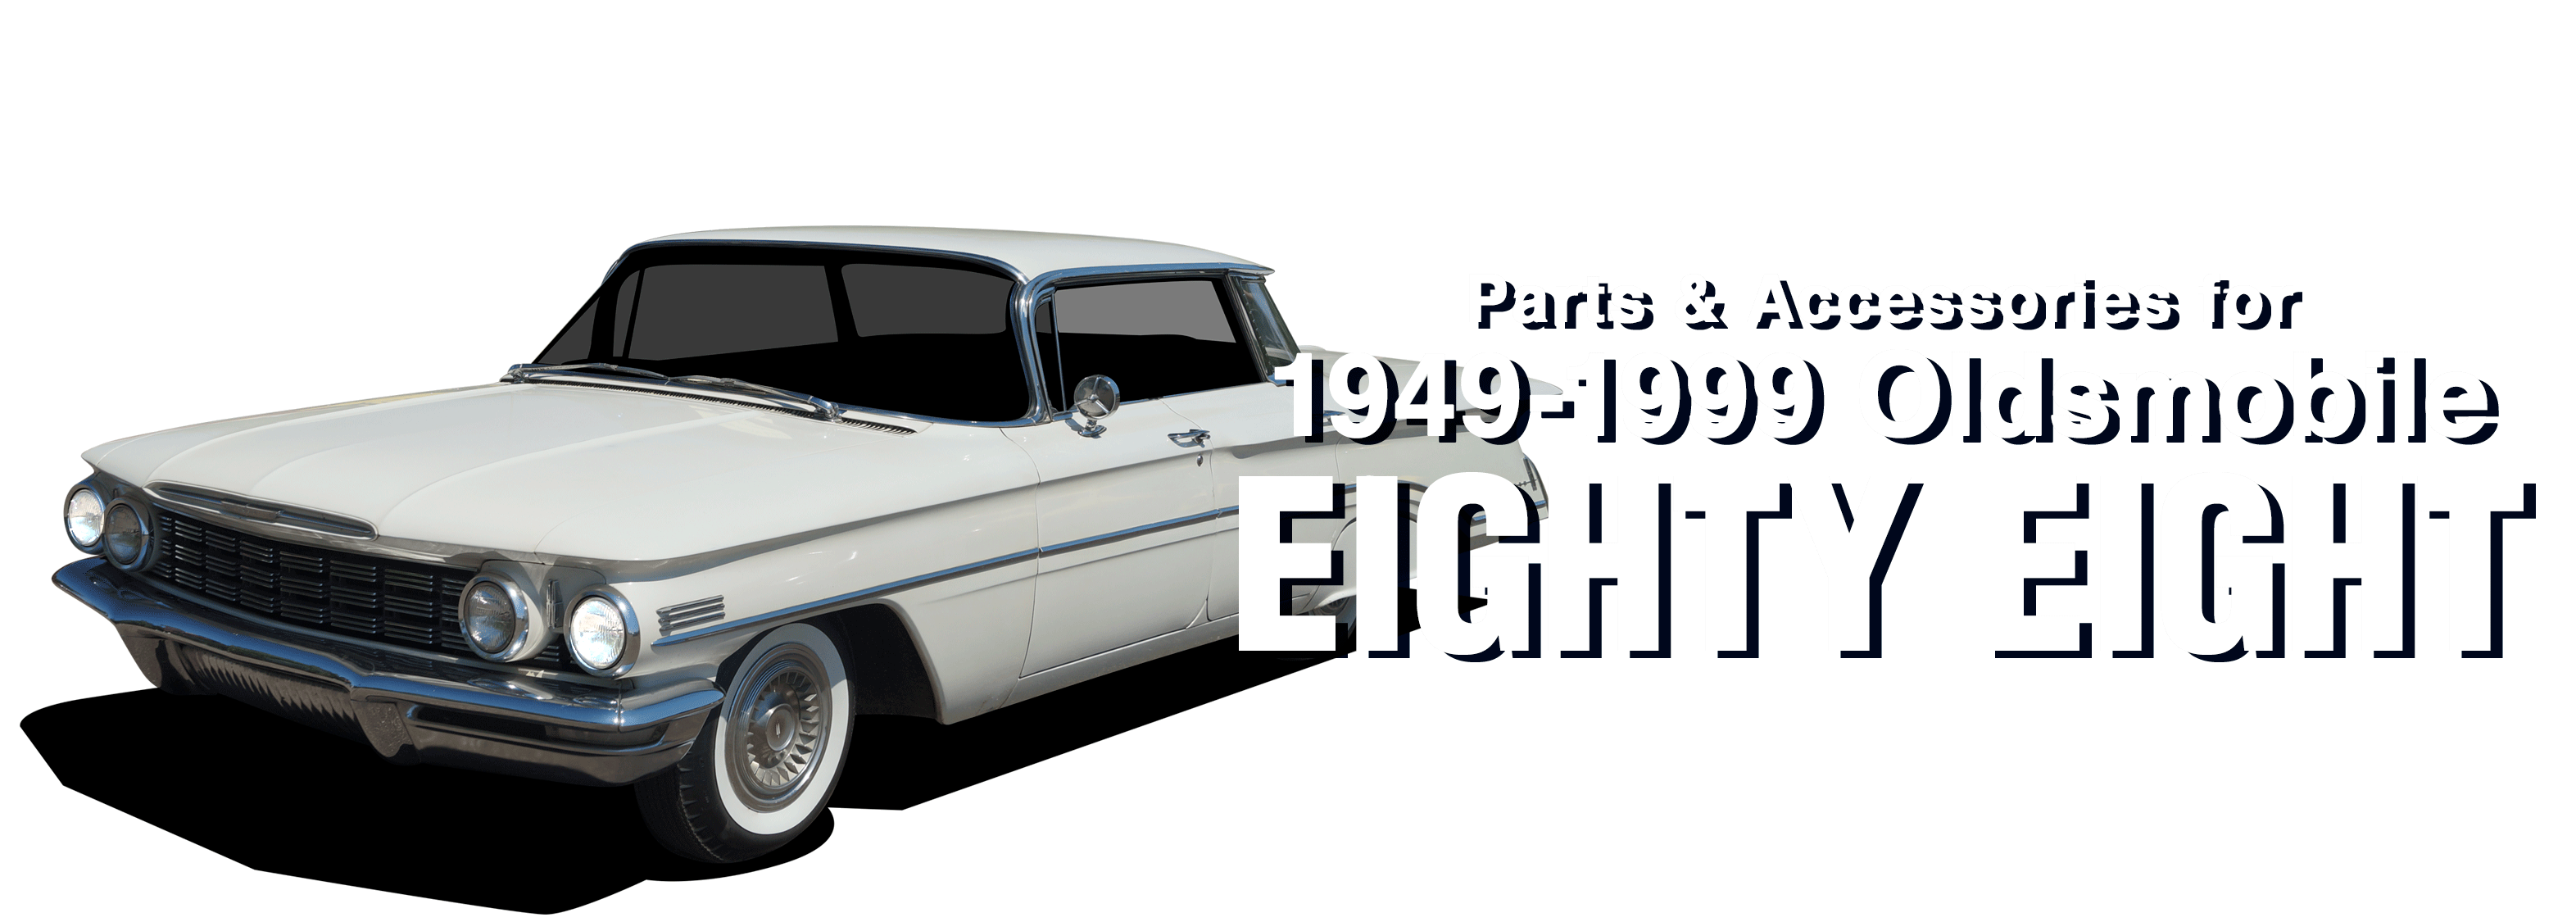 Oldsmobile Eighty-Eight vehicle image